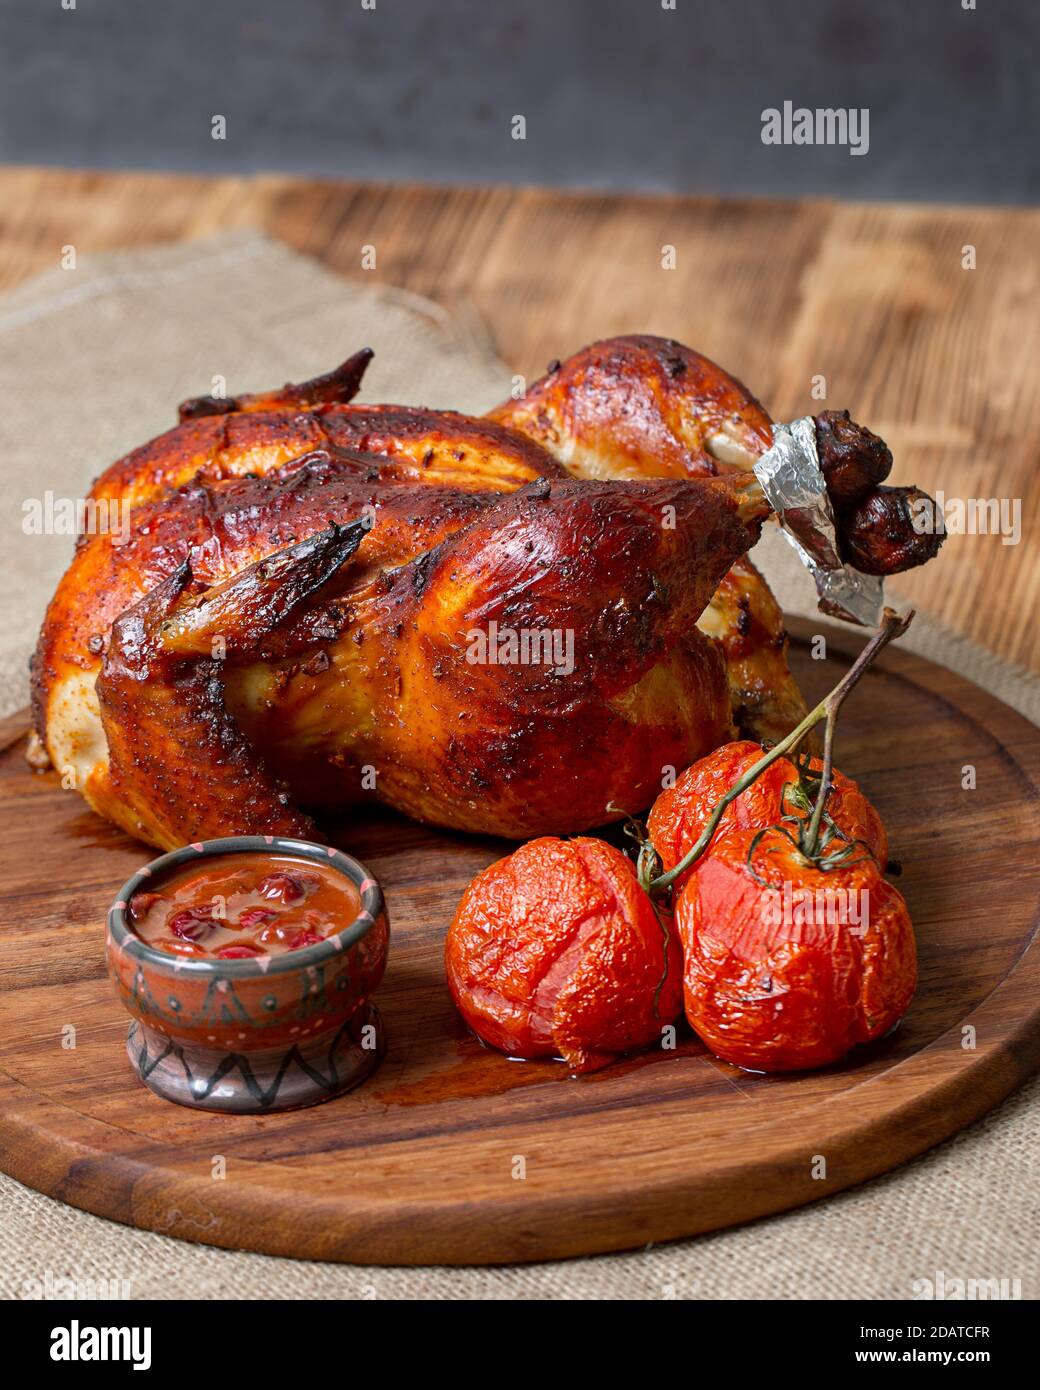 Hähnchen im Ofen gebacken, mit Sauce, auf einem hölzernen Hintergrund Stockfoto